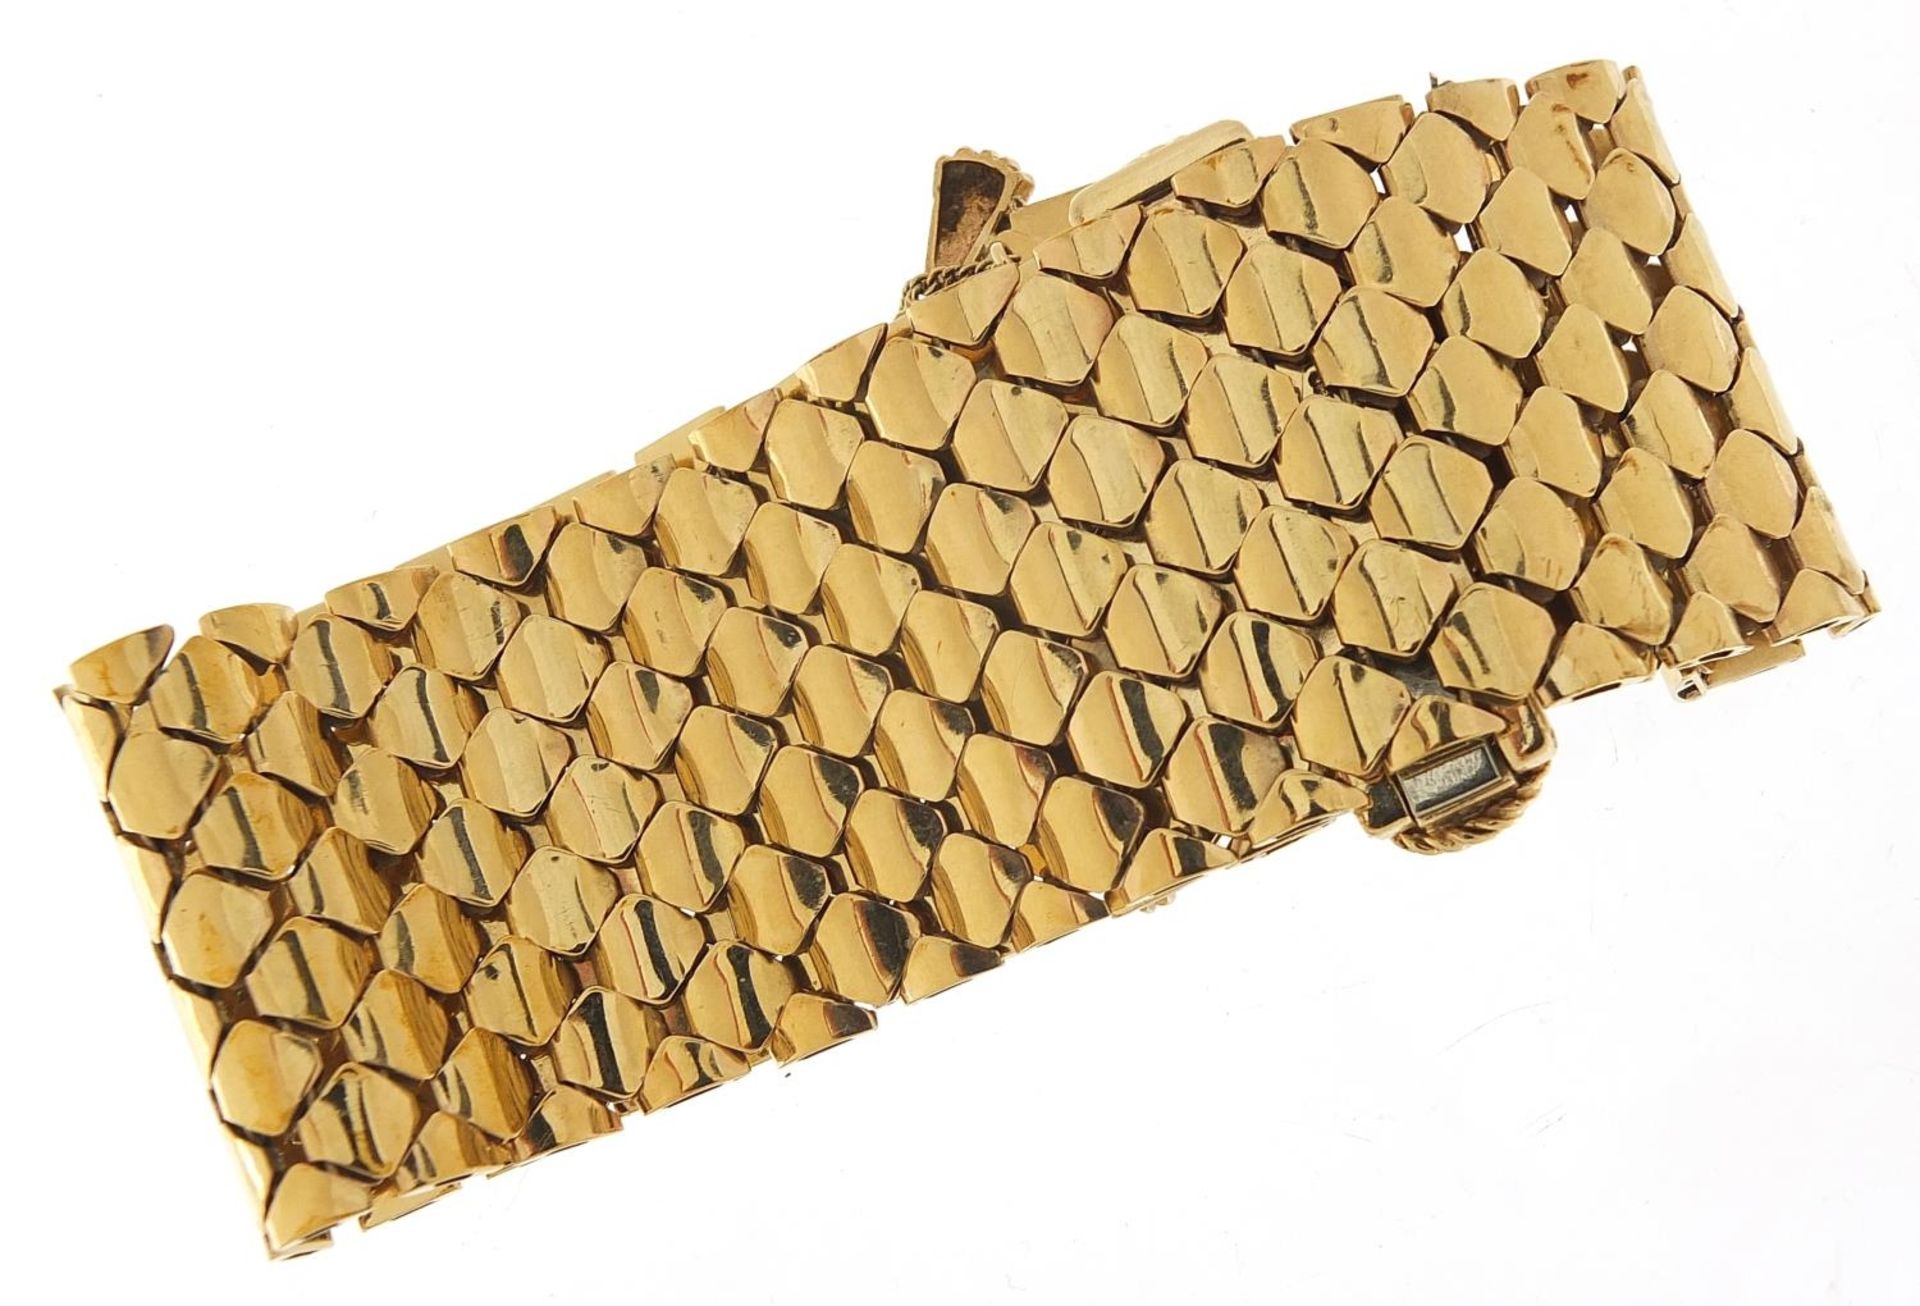 Large 9ct gold belt and buckle design bracelet with floral basket design clasp, S & SLD maker's - Image 4 of 5